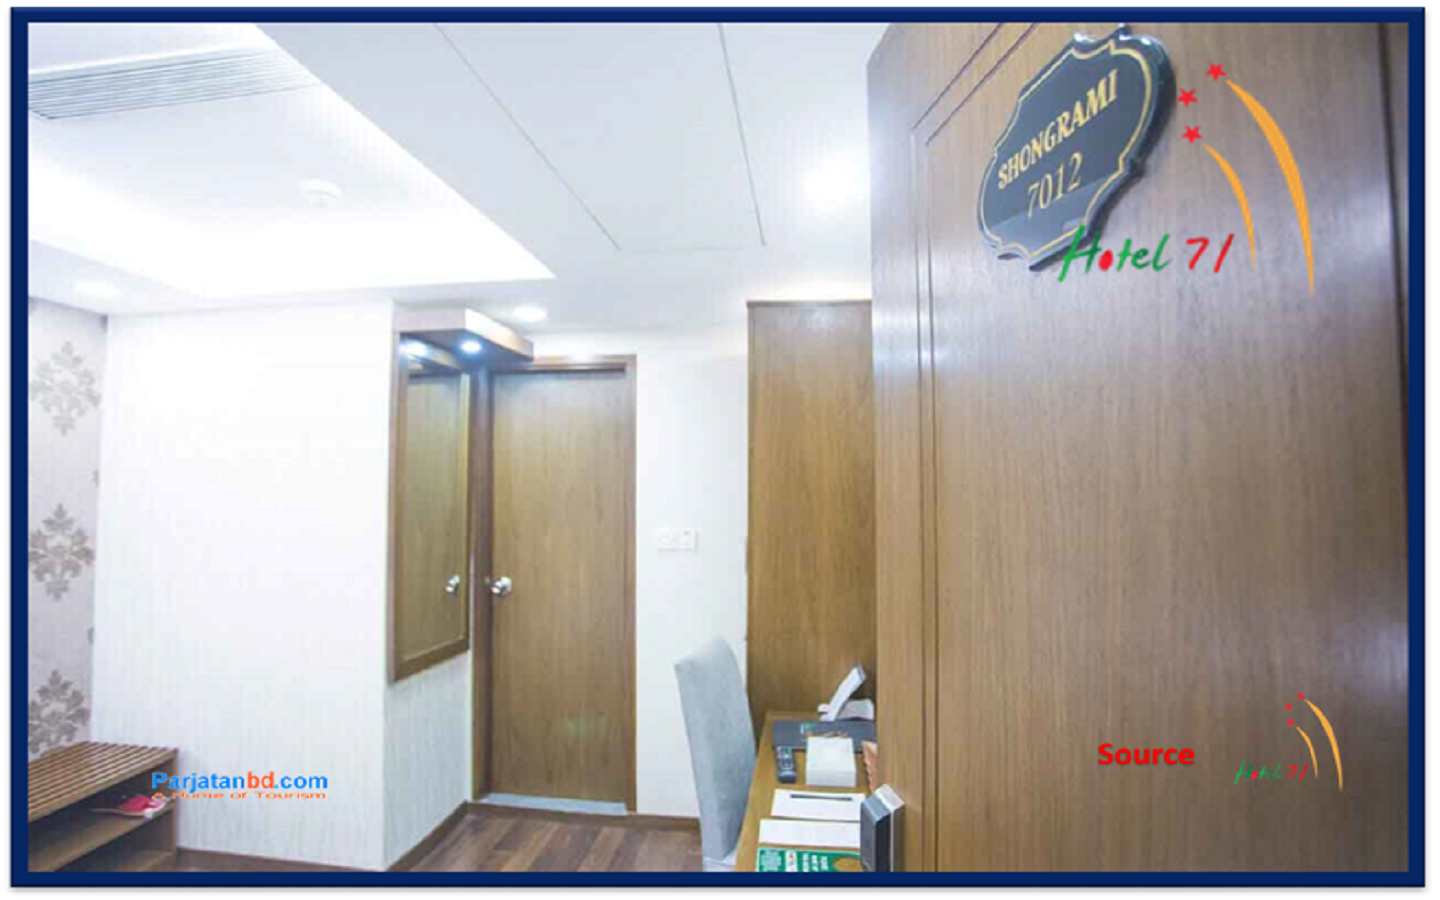 Room Executive Single -1, Hotel 71, Bijoynagar